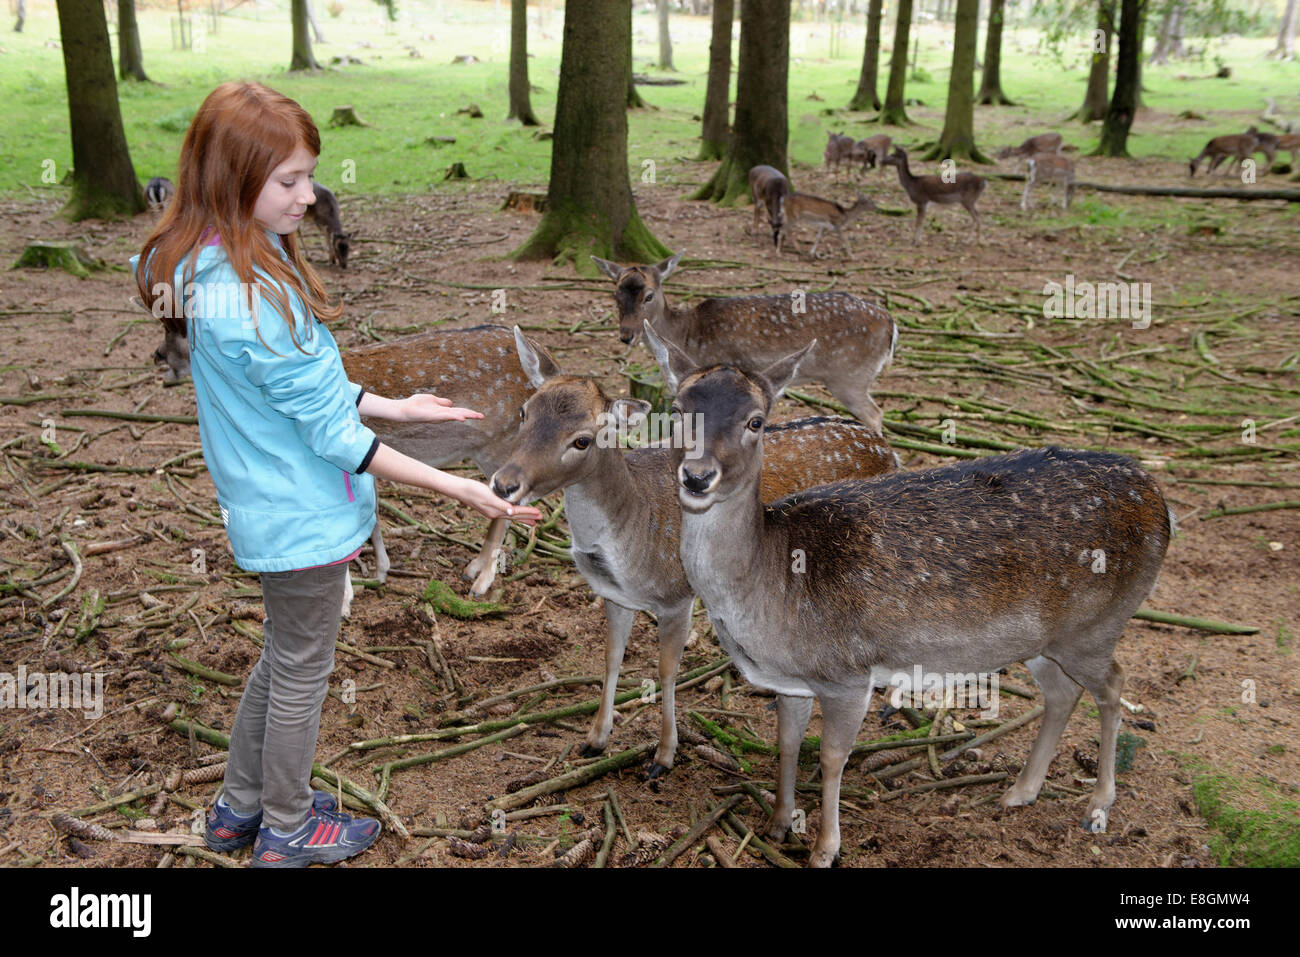 Child, girl feeding deer, Poing Wildlife Park, Upper Bavaria, Bavaria, Germany Stock Photo